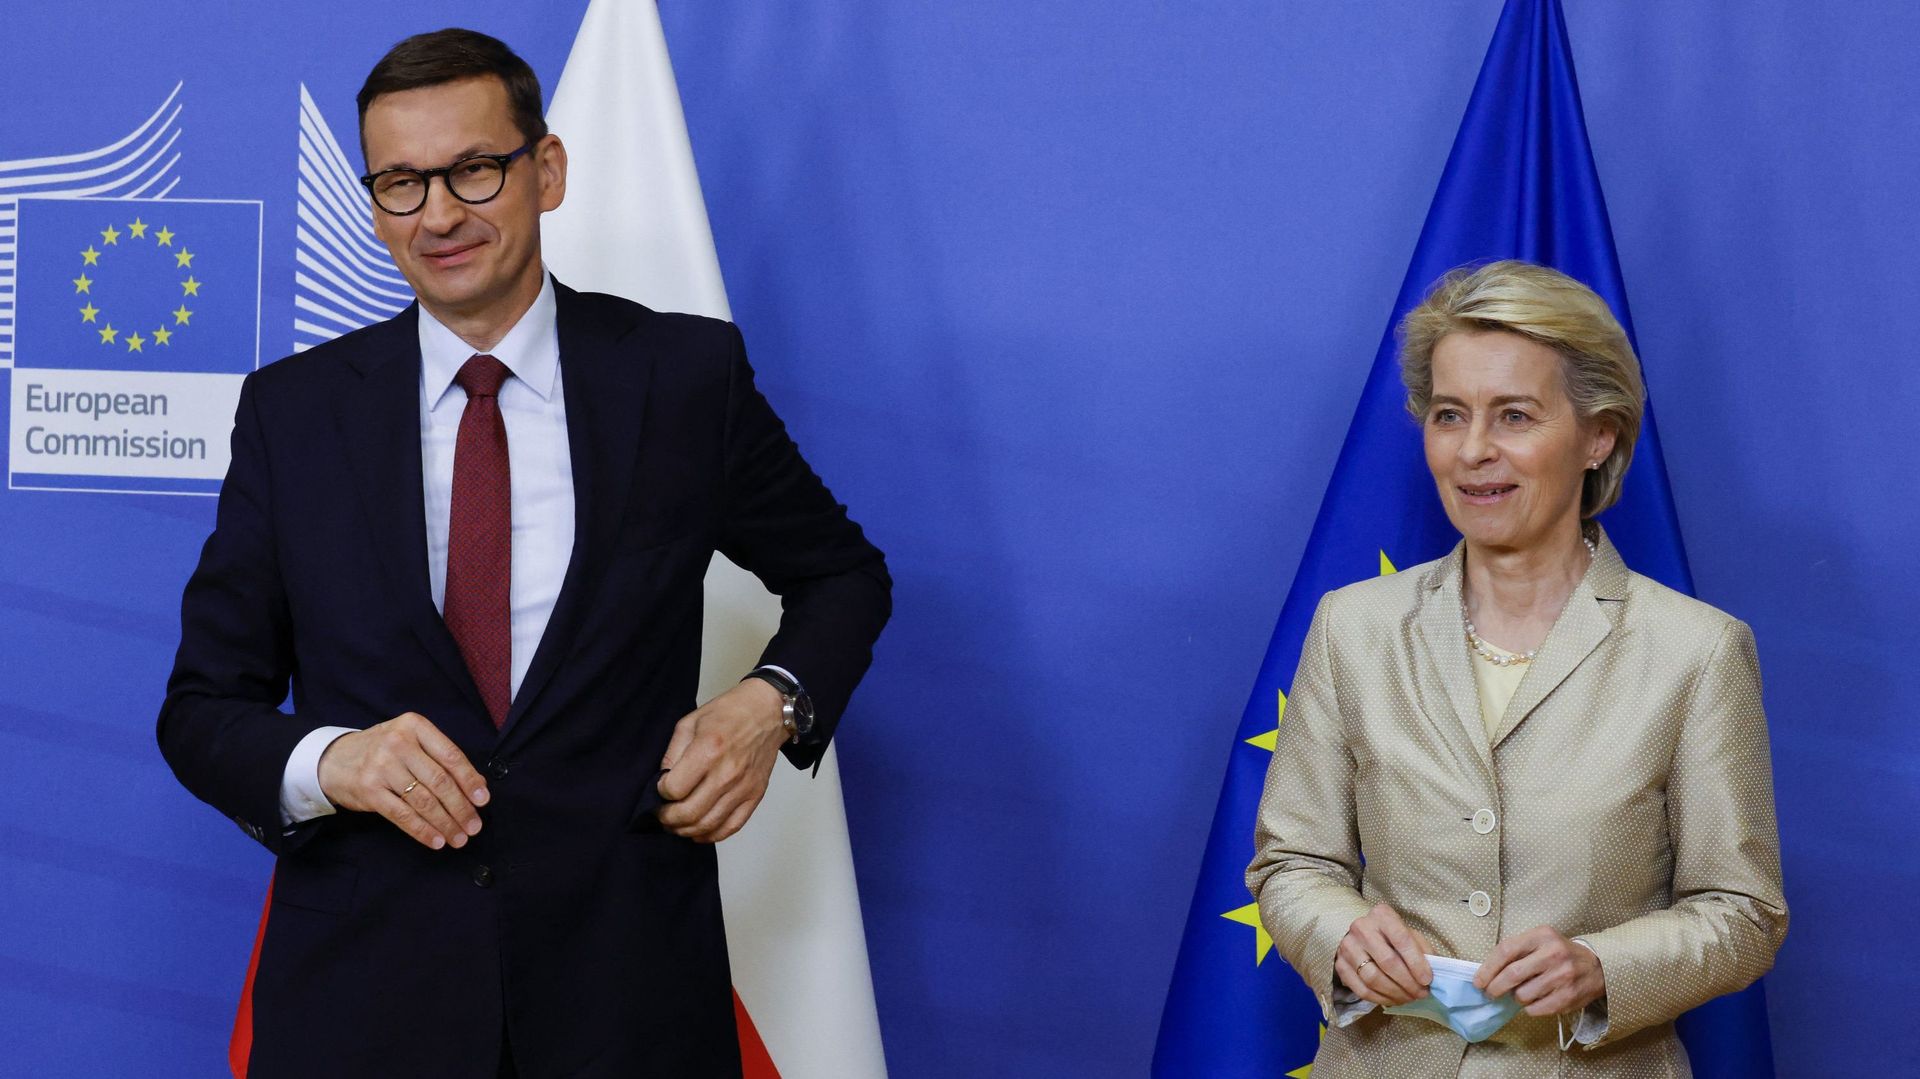 La présidente de la Commission européenne, Ursula von der Leyen (à droite), accueille le Premier ministre polonais, Mateusz Morawiecki (à gauche), à son arrivée pour une réunion bilatérale à Bruxelles, le 13 juillet 2021.